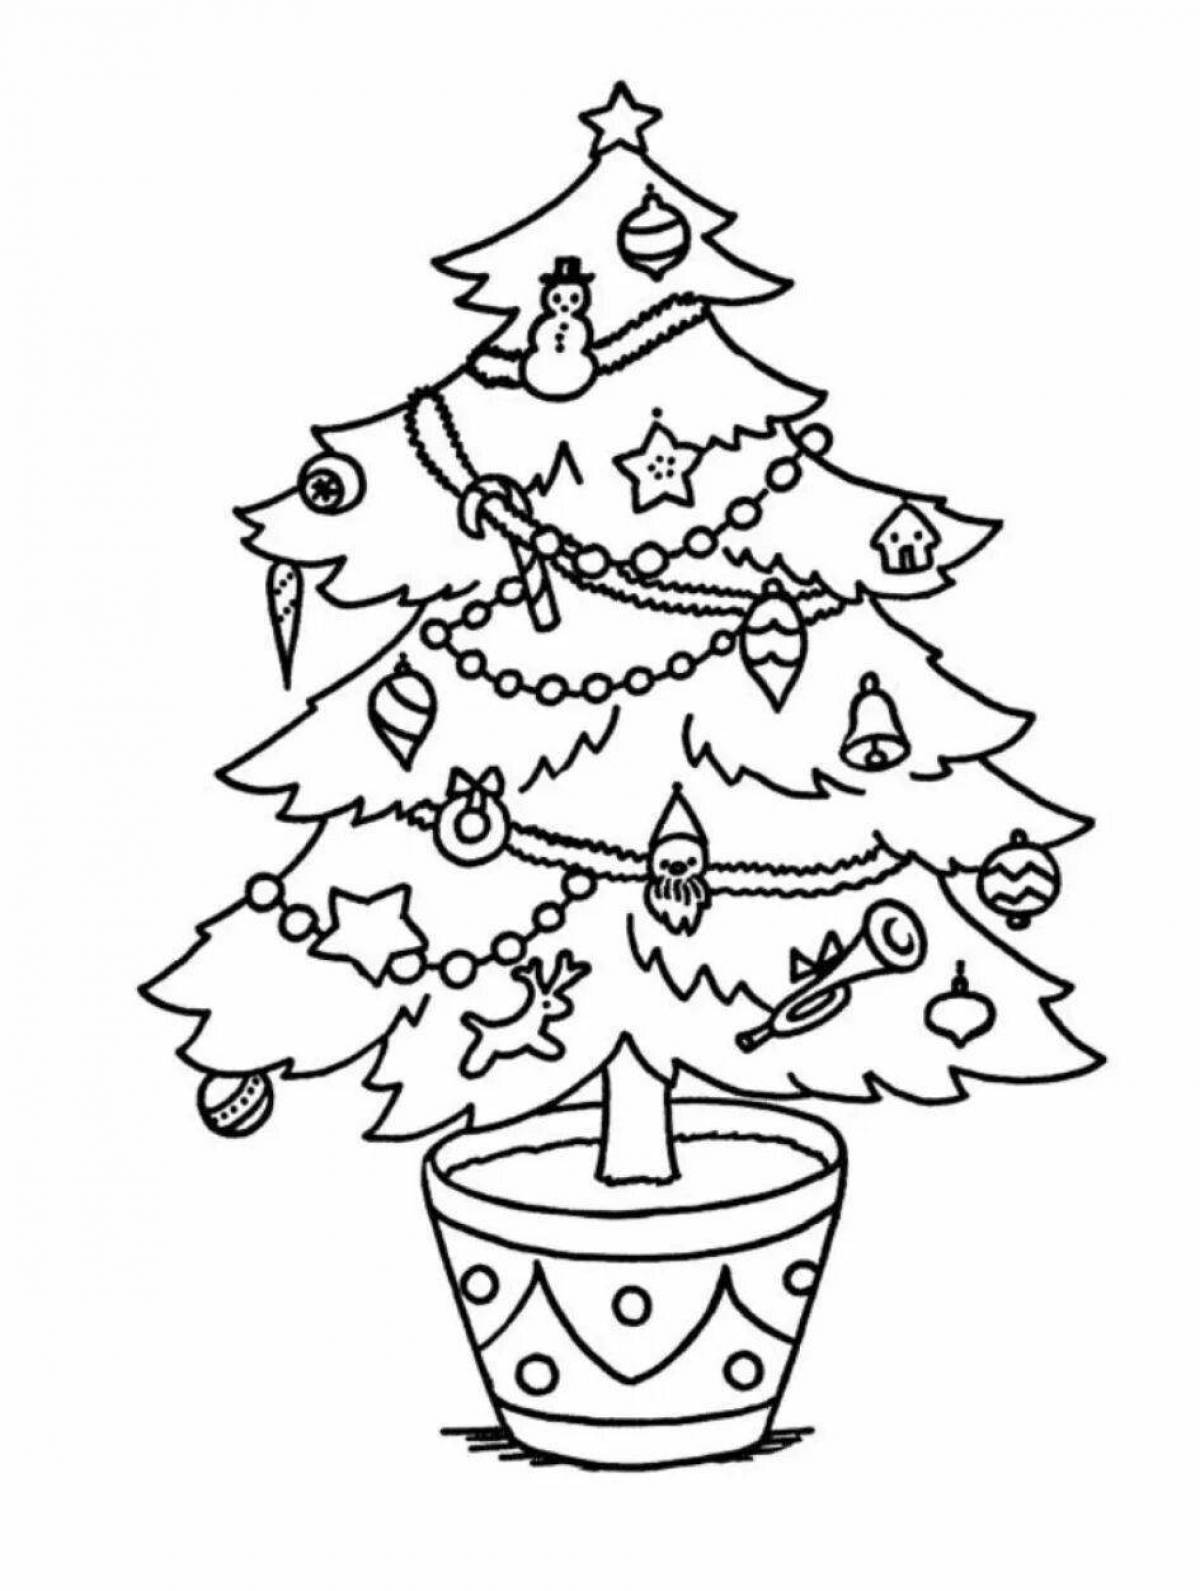 Раскраска праздничная новогодняя елка для детей 6-7 лет